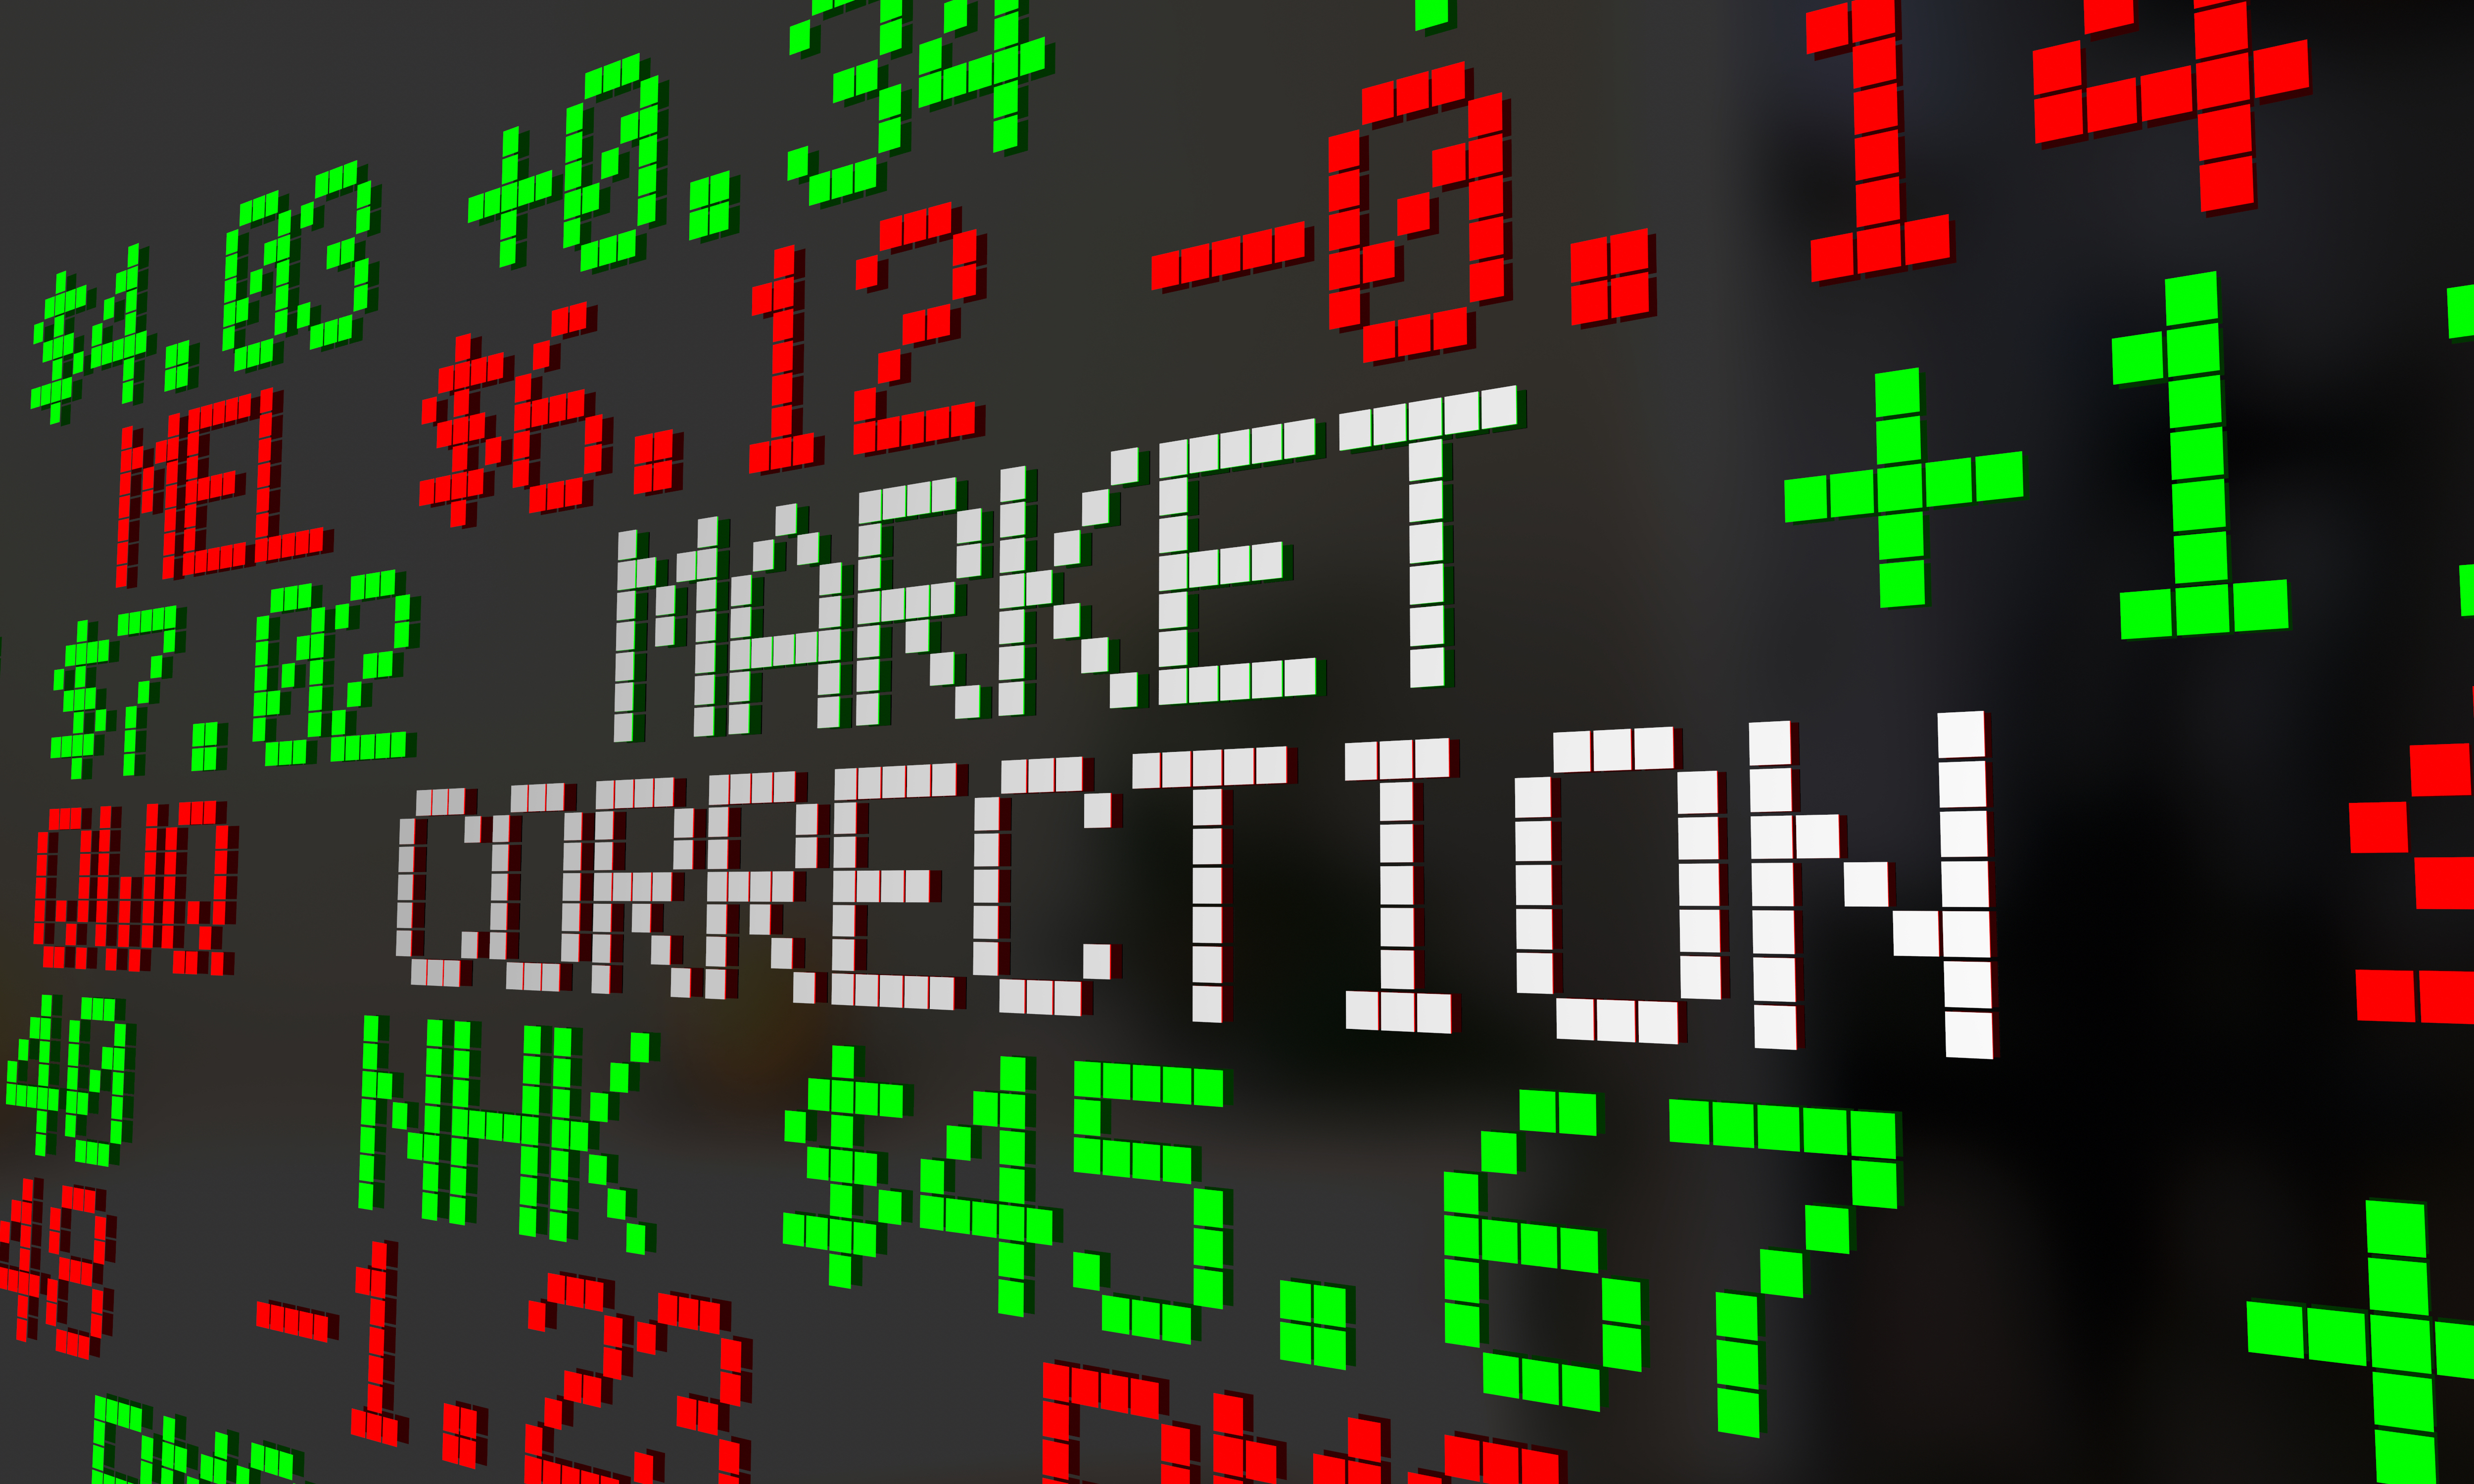 Market Correction